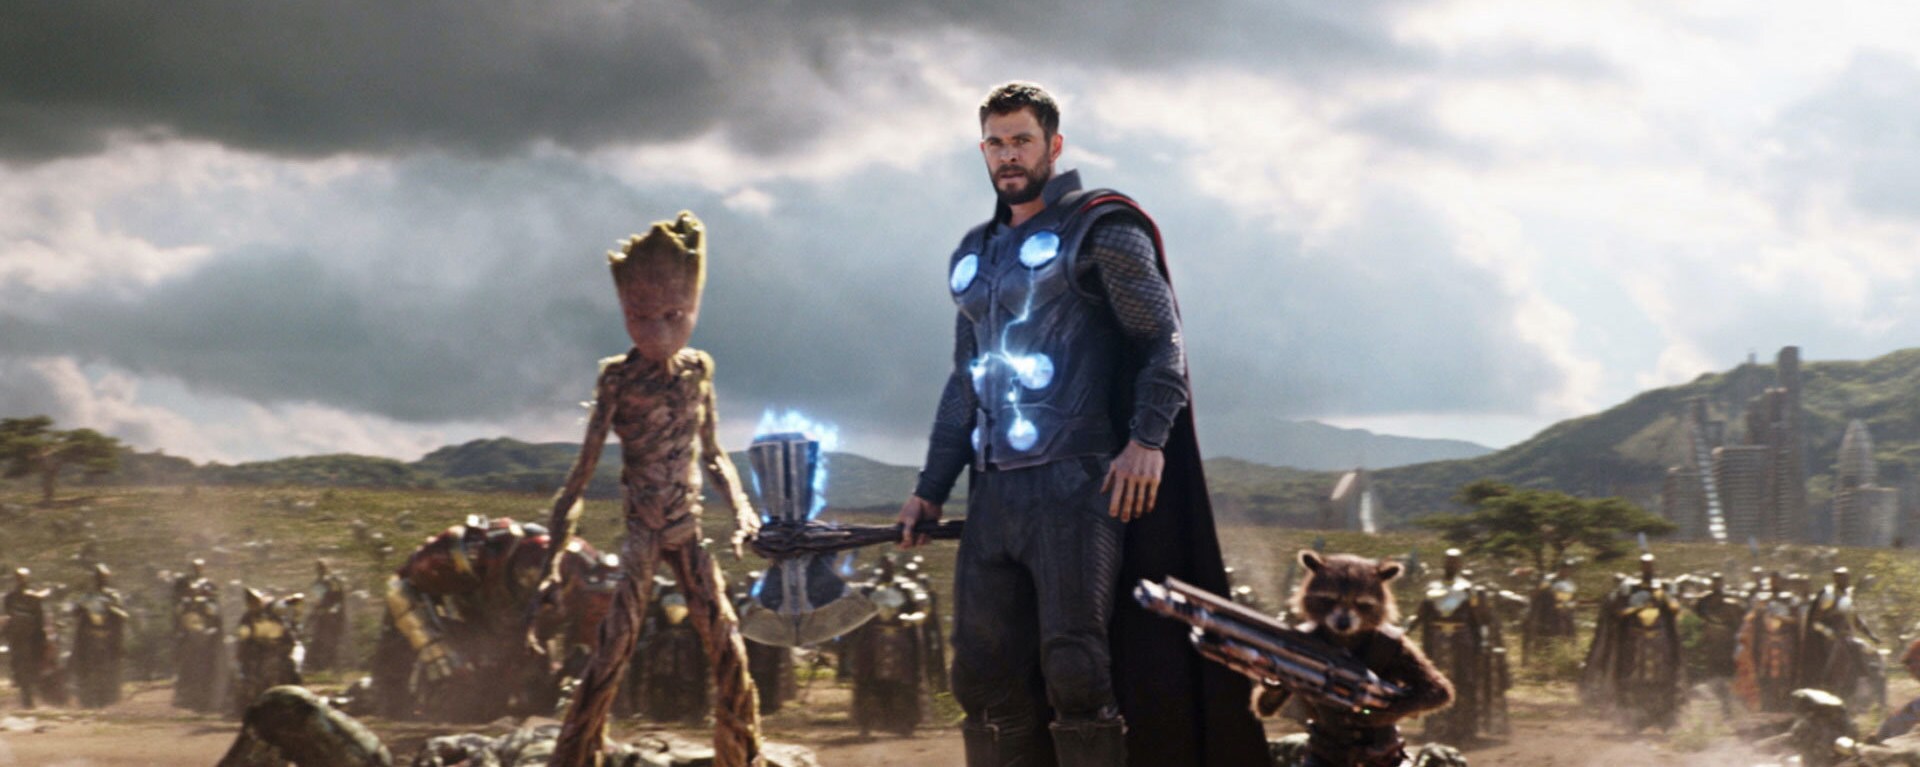 Groot con el hacha de Thor 